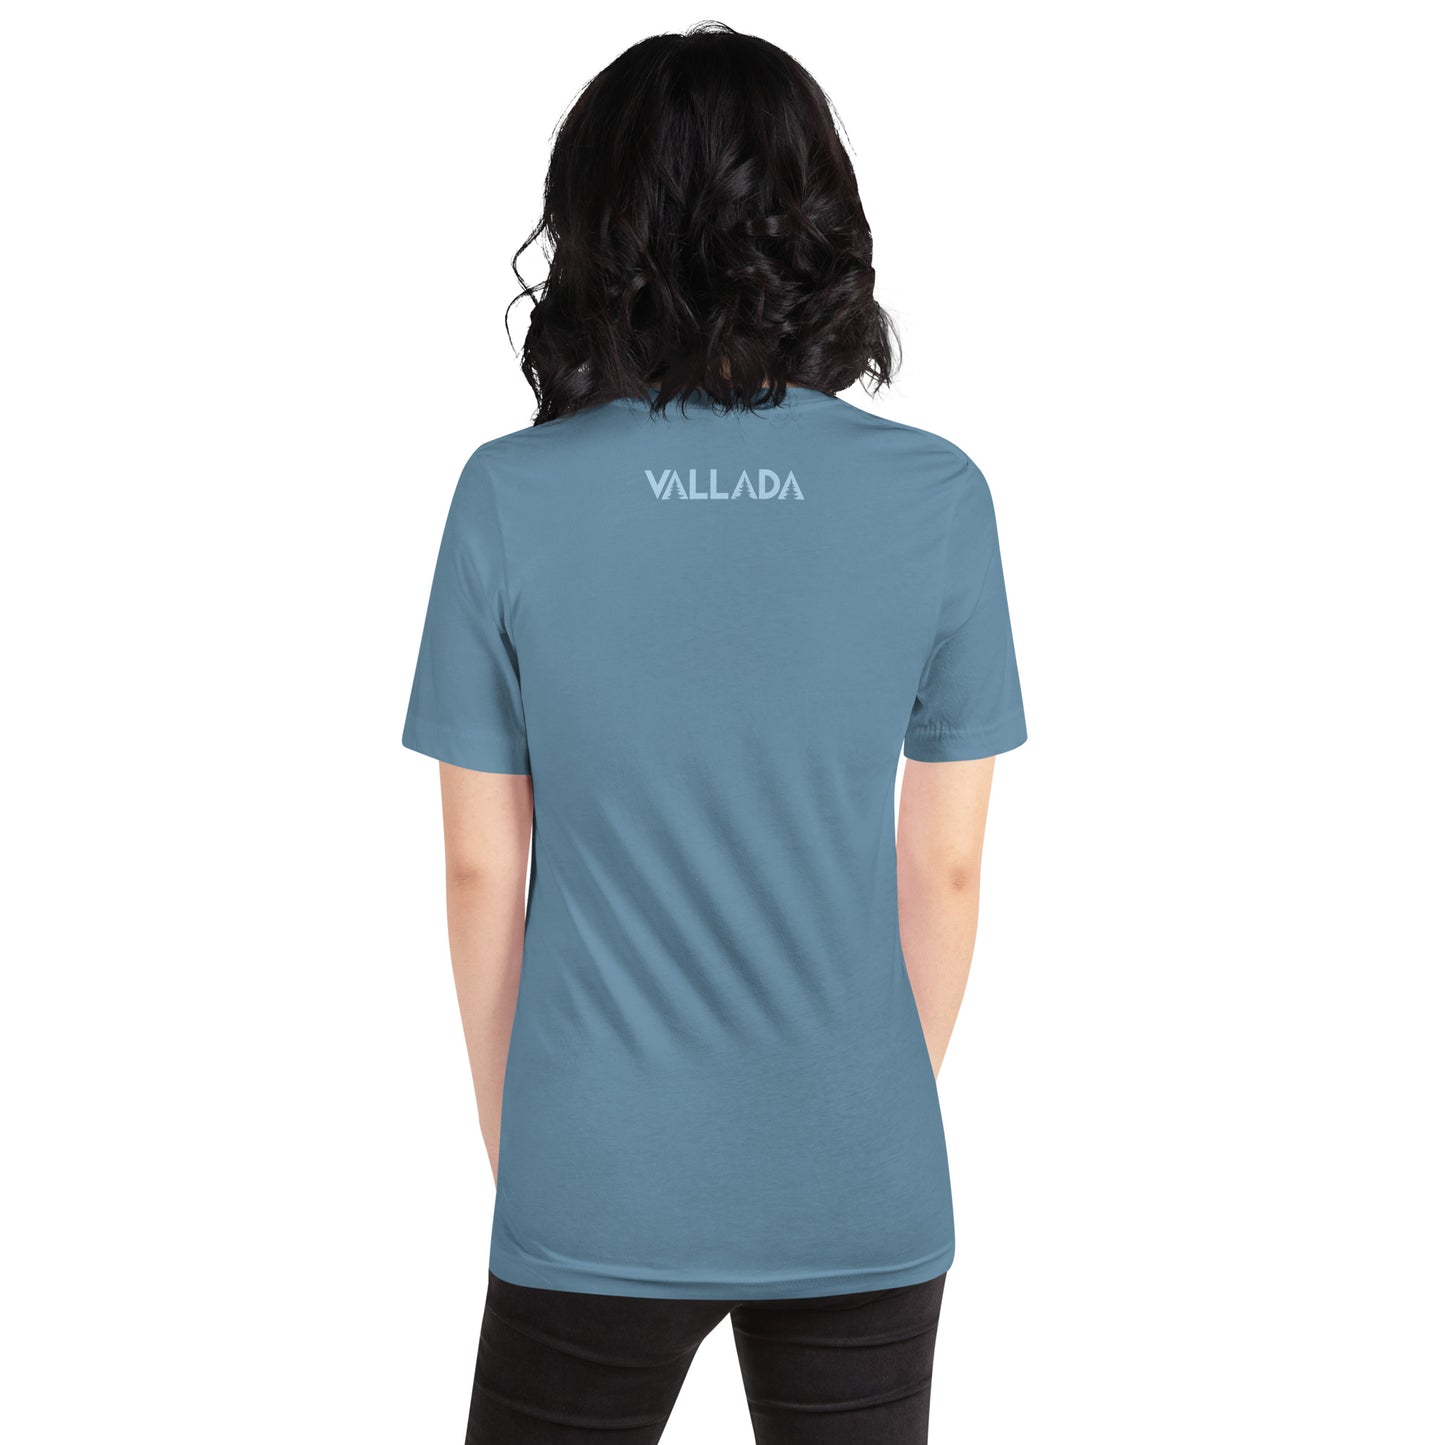 Diese Wanderfreundin trägt ein stahlblaues Damen T-Shirt aus der Säntis-Collection von Vallada. Sie steht mit dem Rücken zur Kamera, so dass wir das Vallada-Logo sehen.